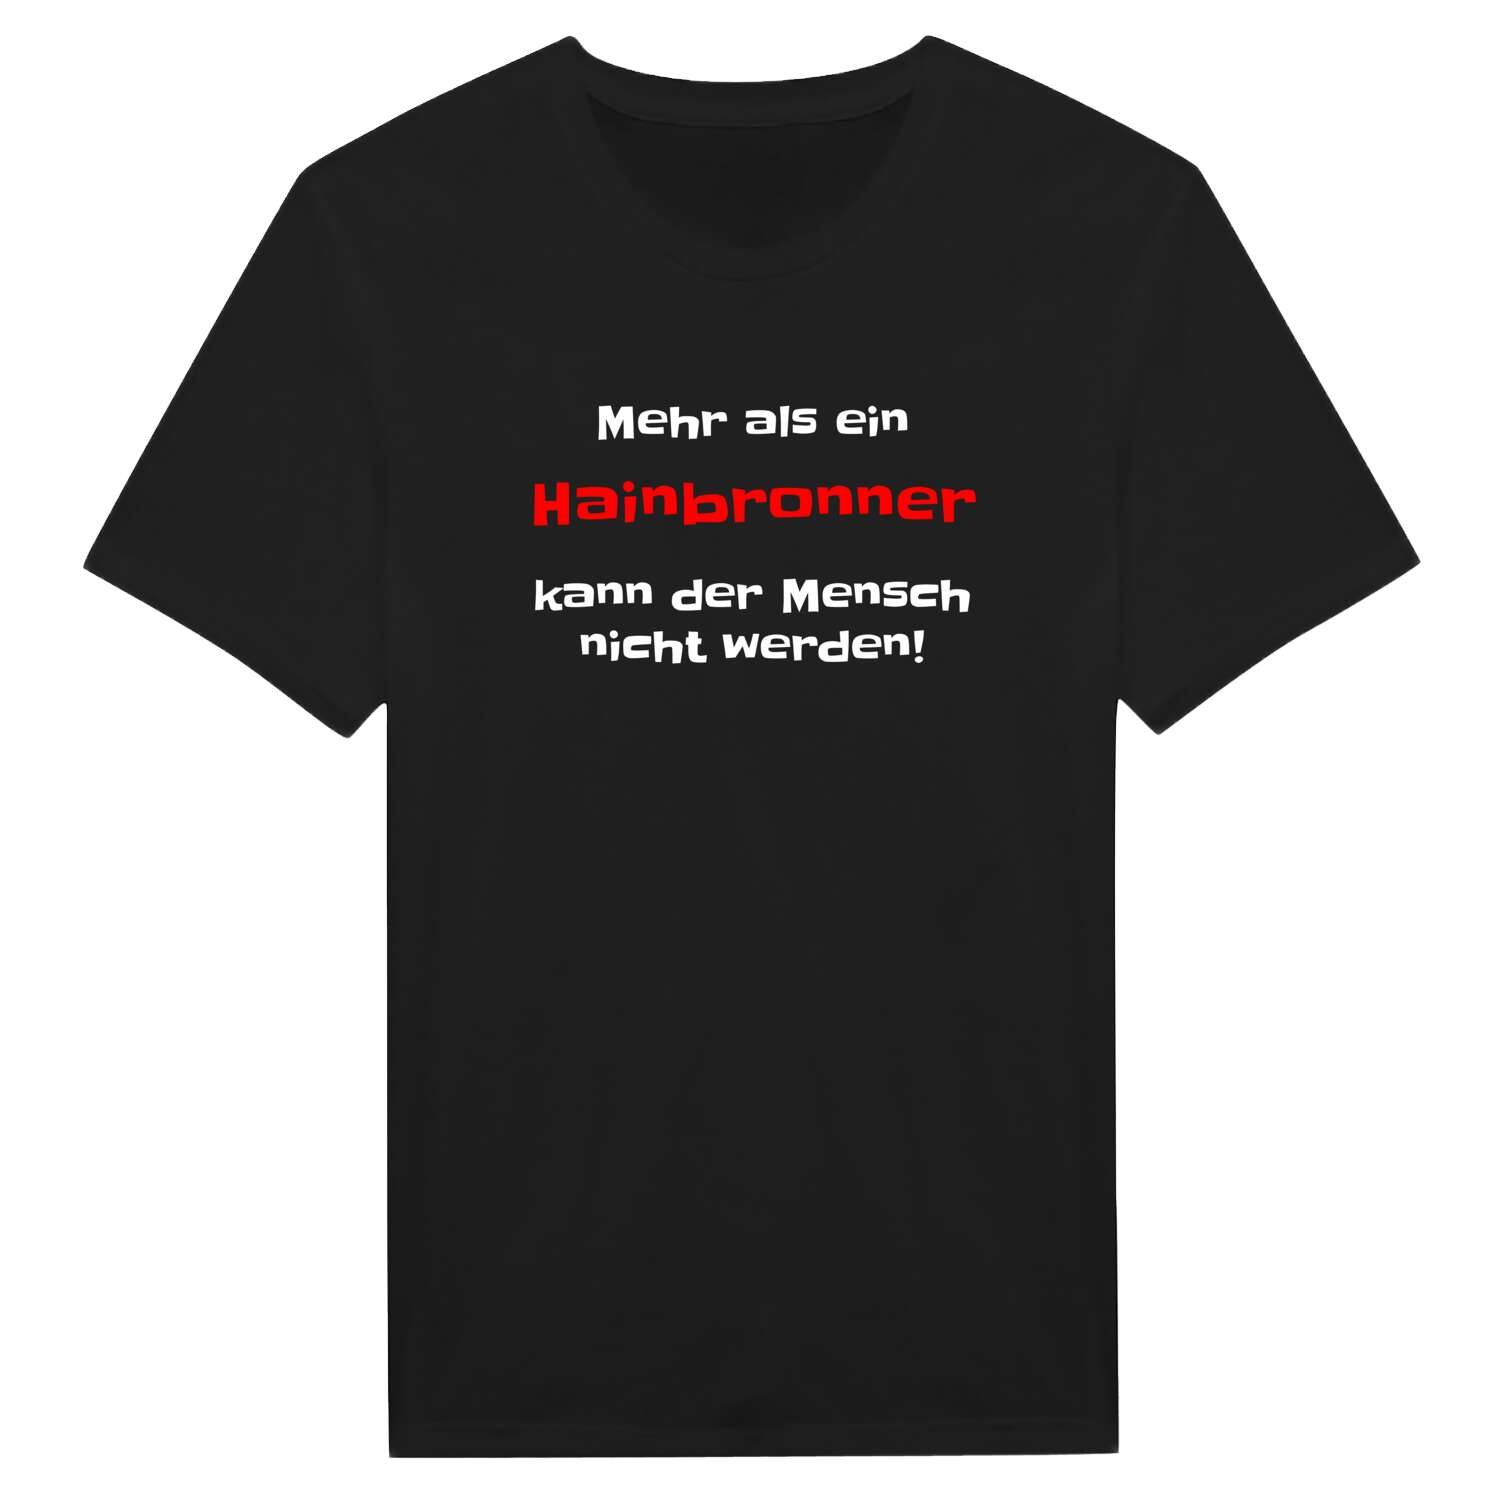 Hainbronn T-Shirt »Mehr als ein«